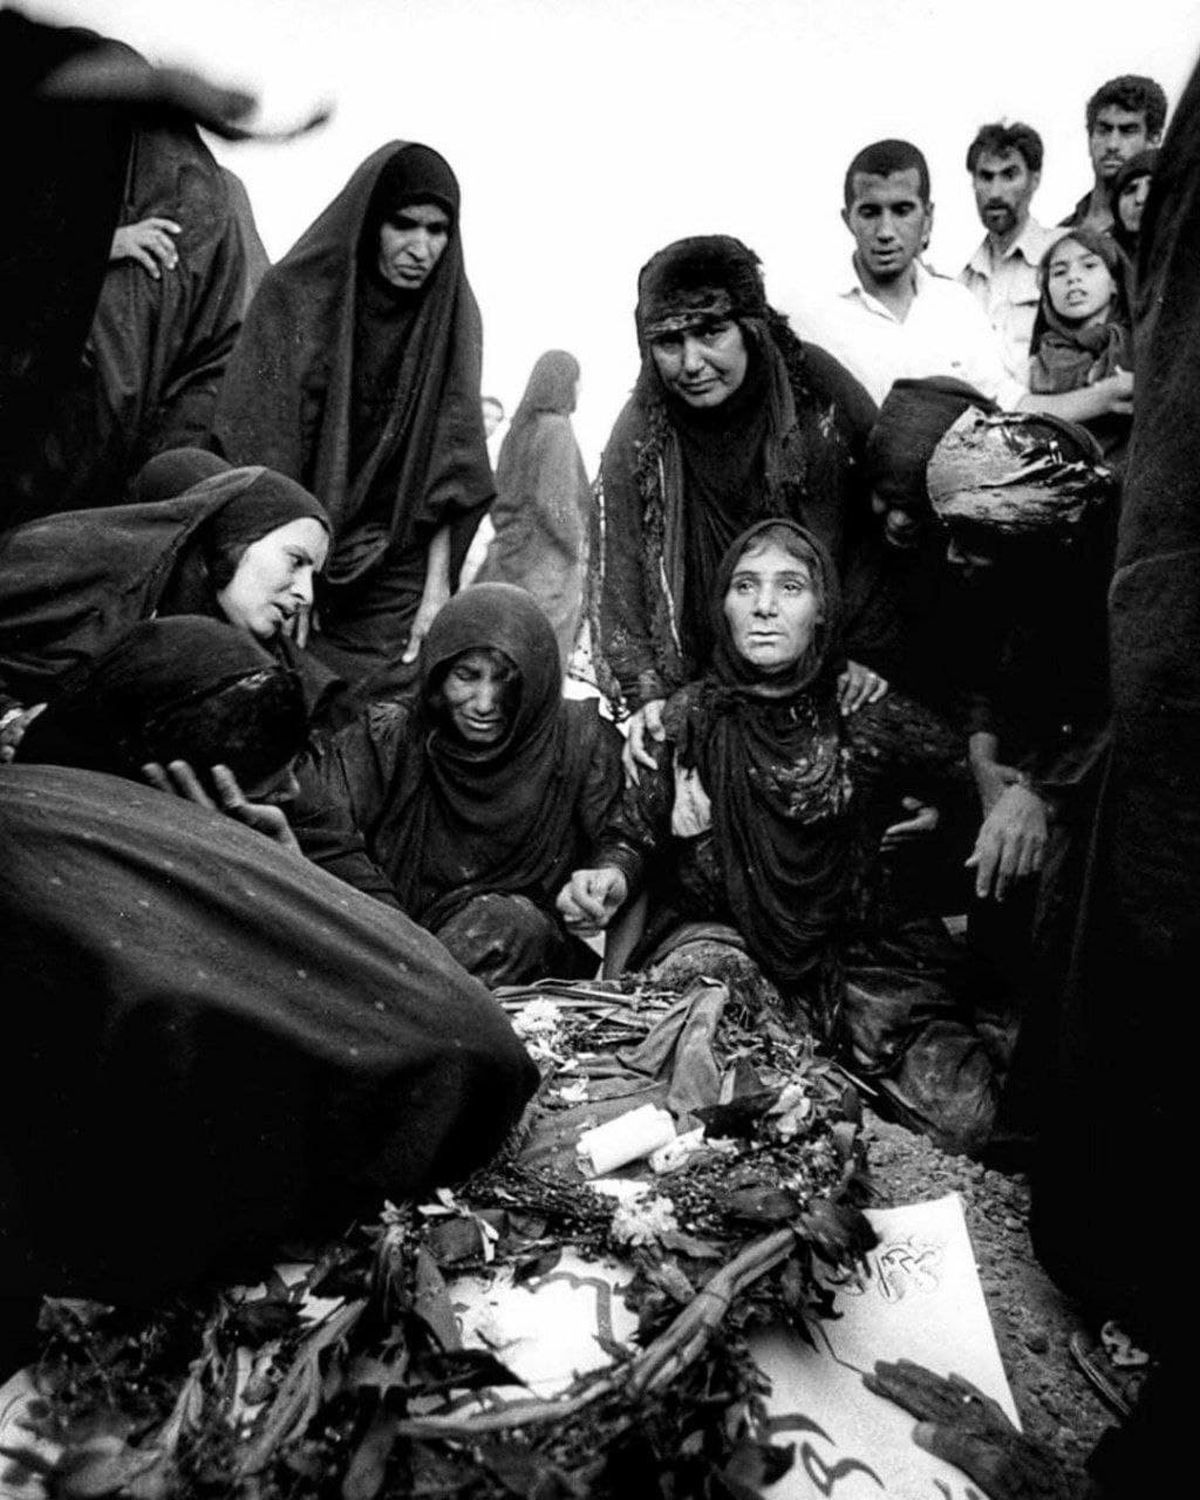 تصویری دردناک از عزاداری بر مزار یک شهید جنگ ایران و عراق